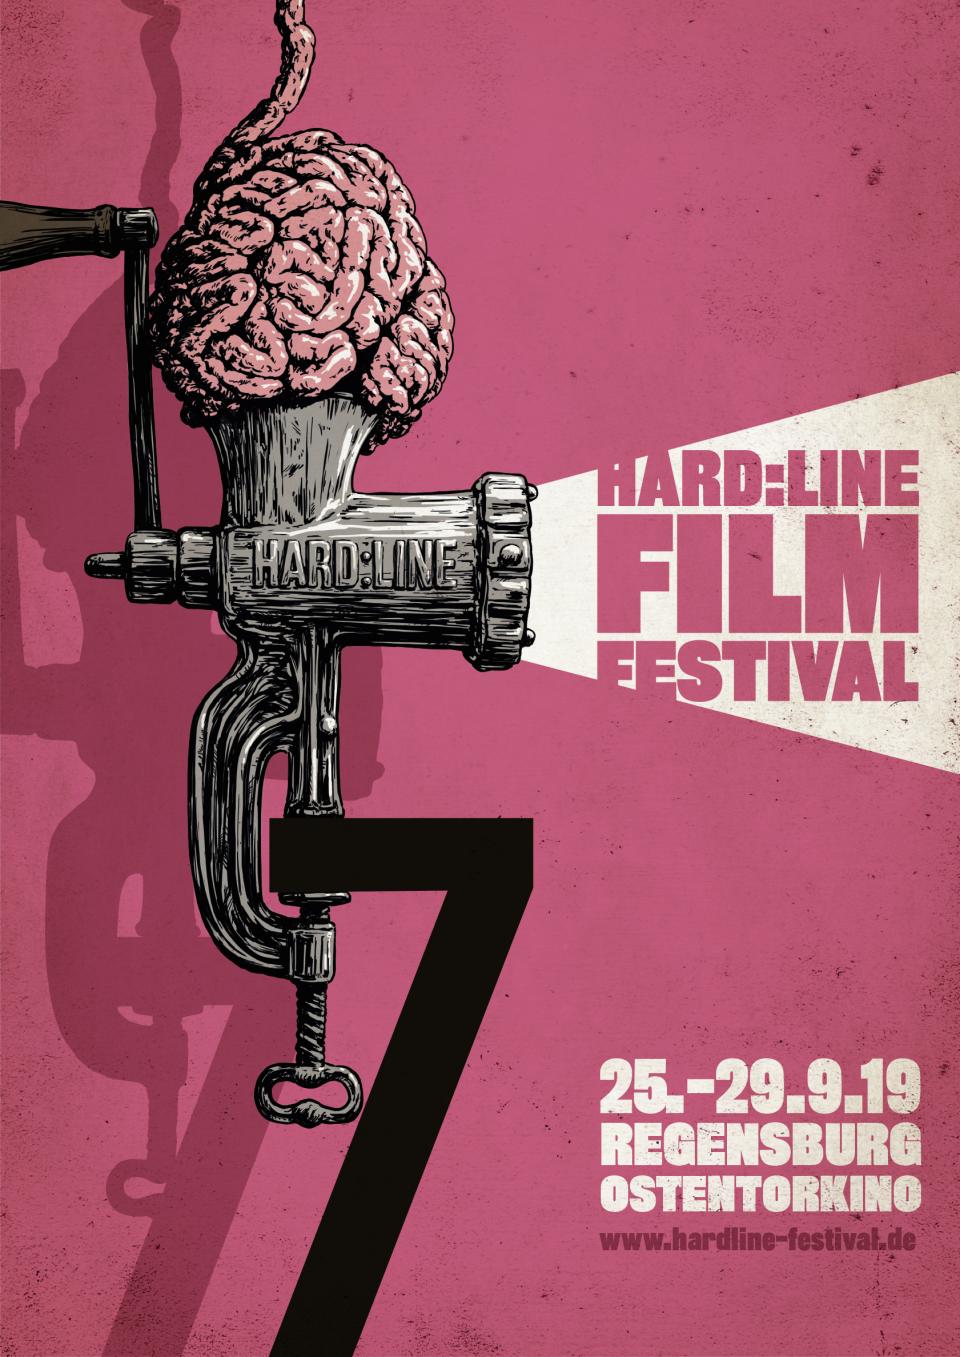 Hardline Film Festival, Artwork 2019